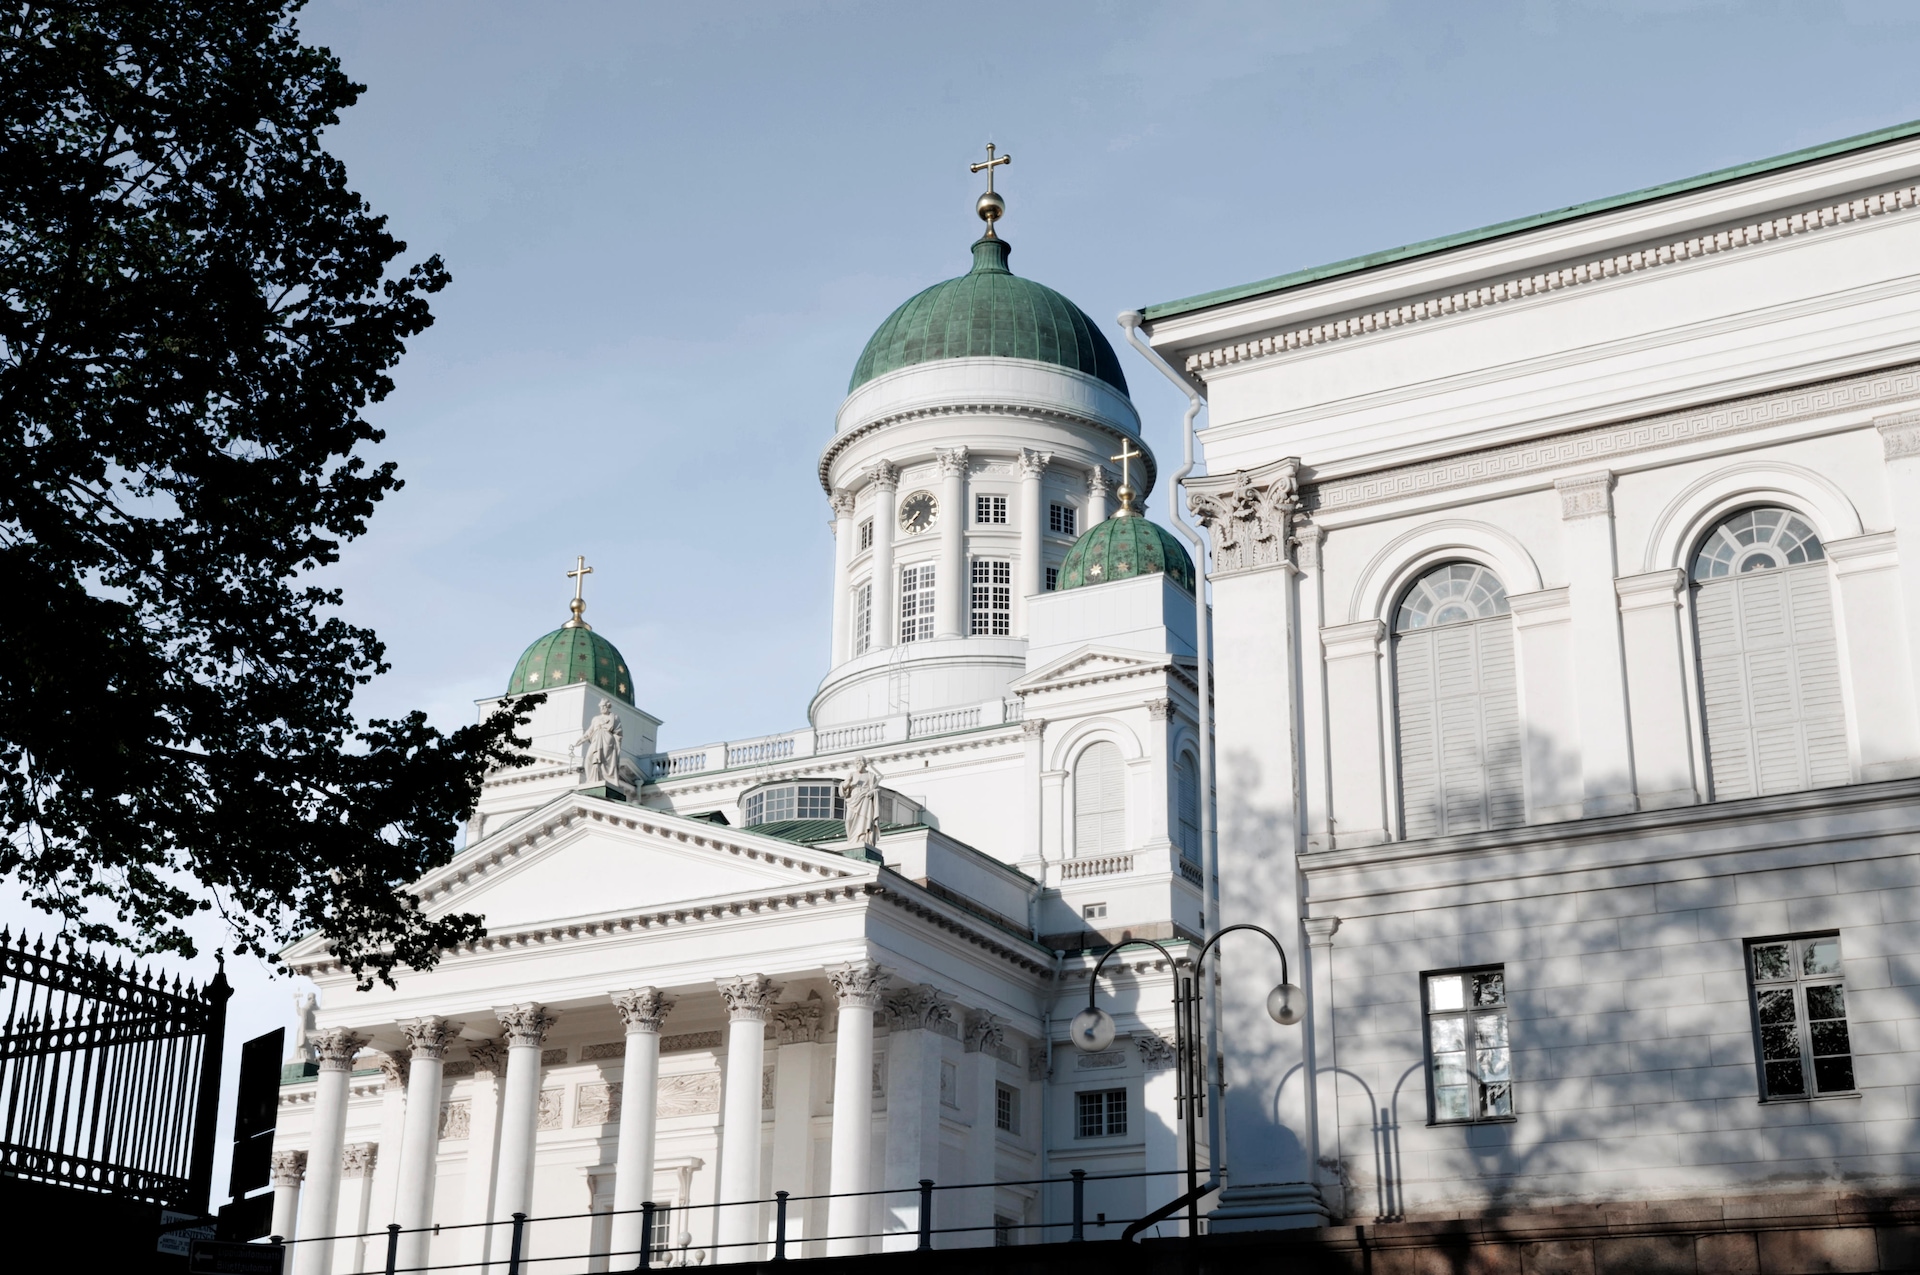 helsinki finnair finland destinations flights tickets europe